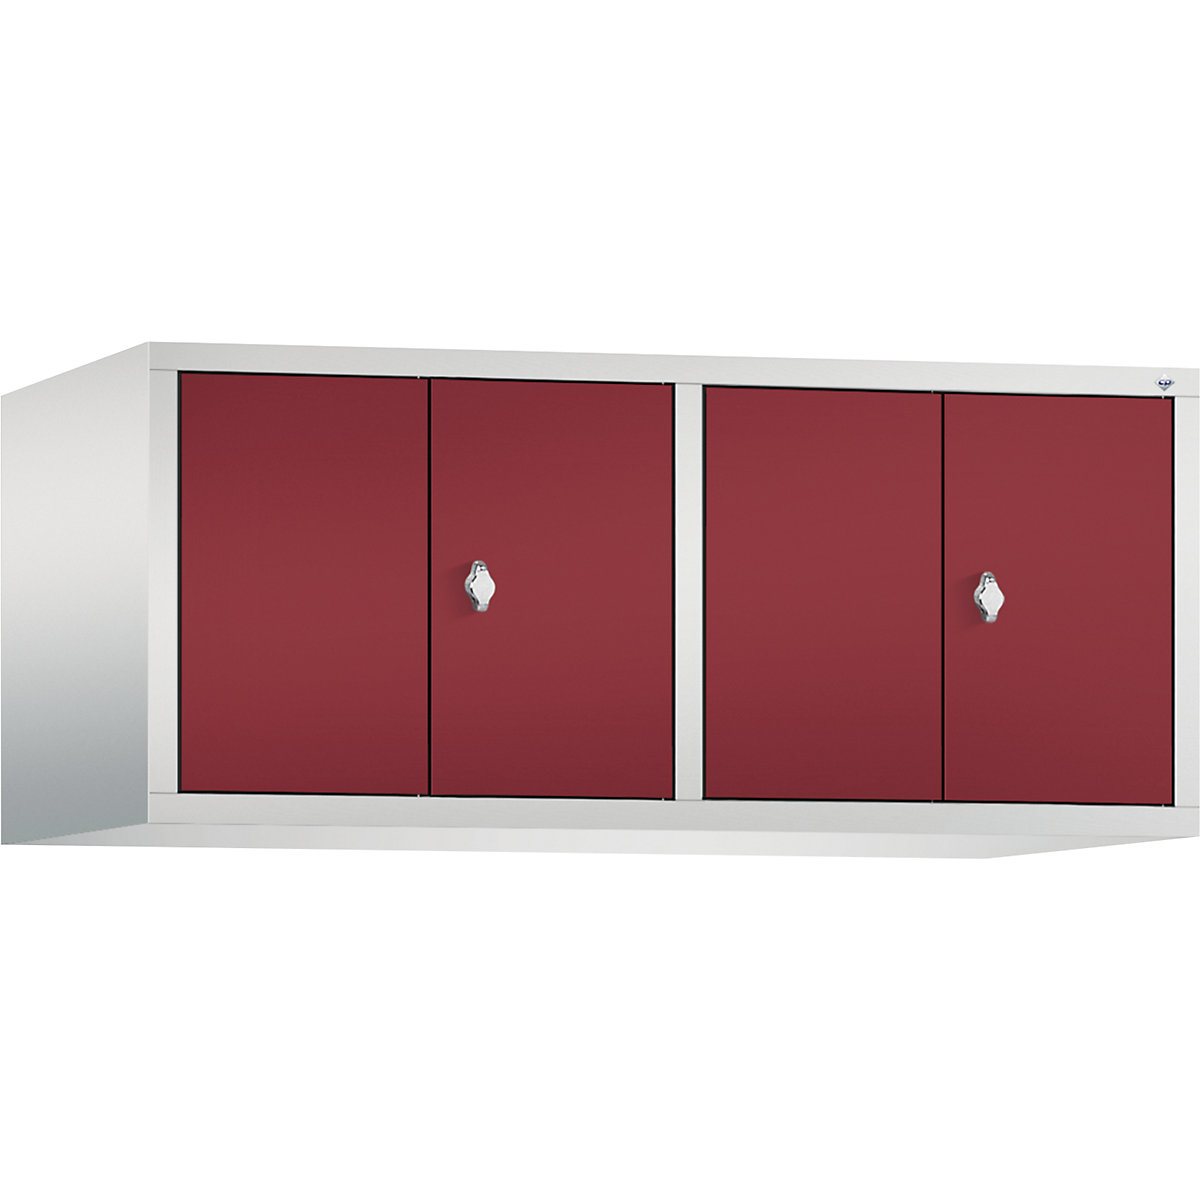 C+P – Altillo CLASSIC, puertas batientes que cierran al ras entre sí, 4 compartimentos, anchura de compartimento 300 mm, gris luminoso / rojo rubí